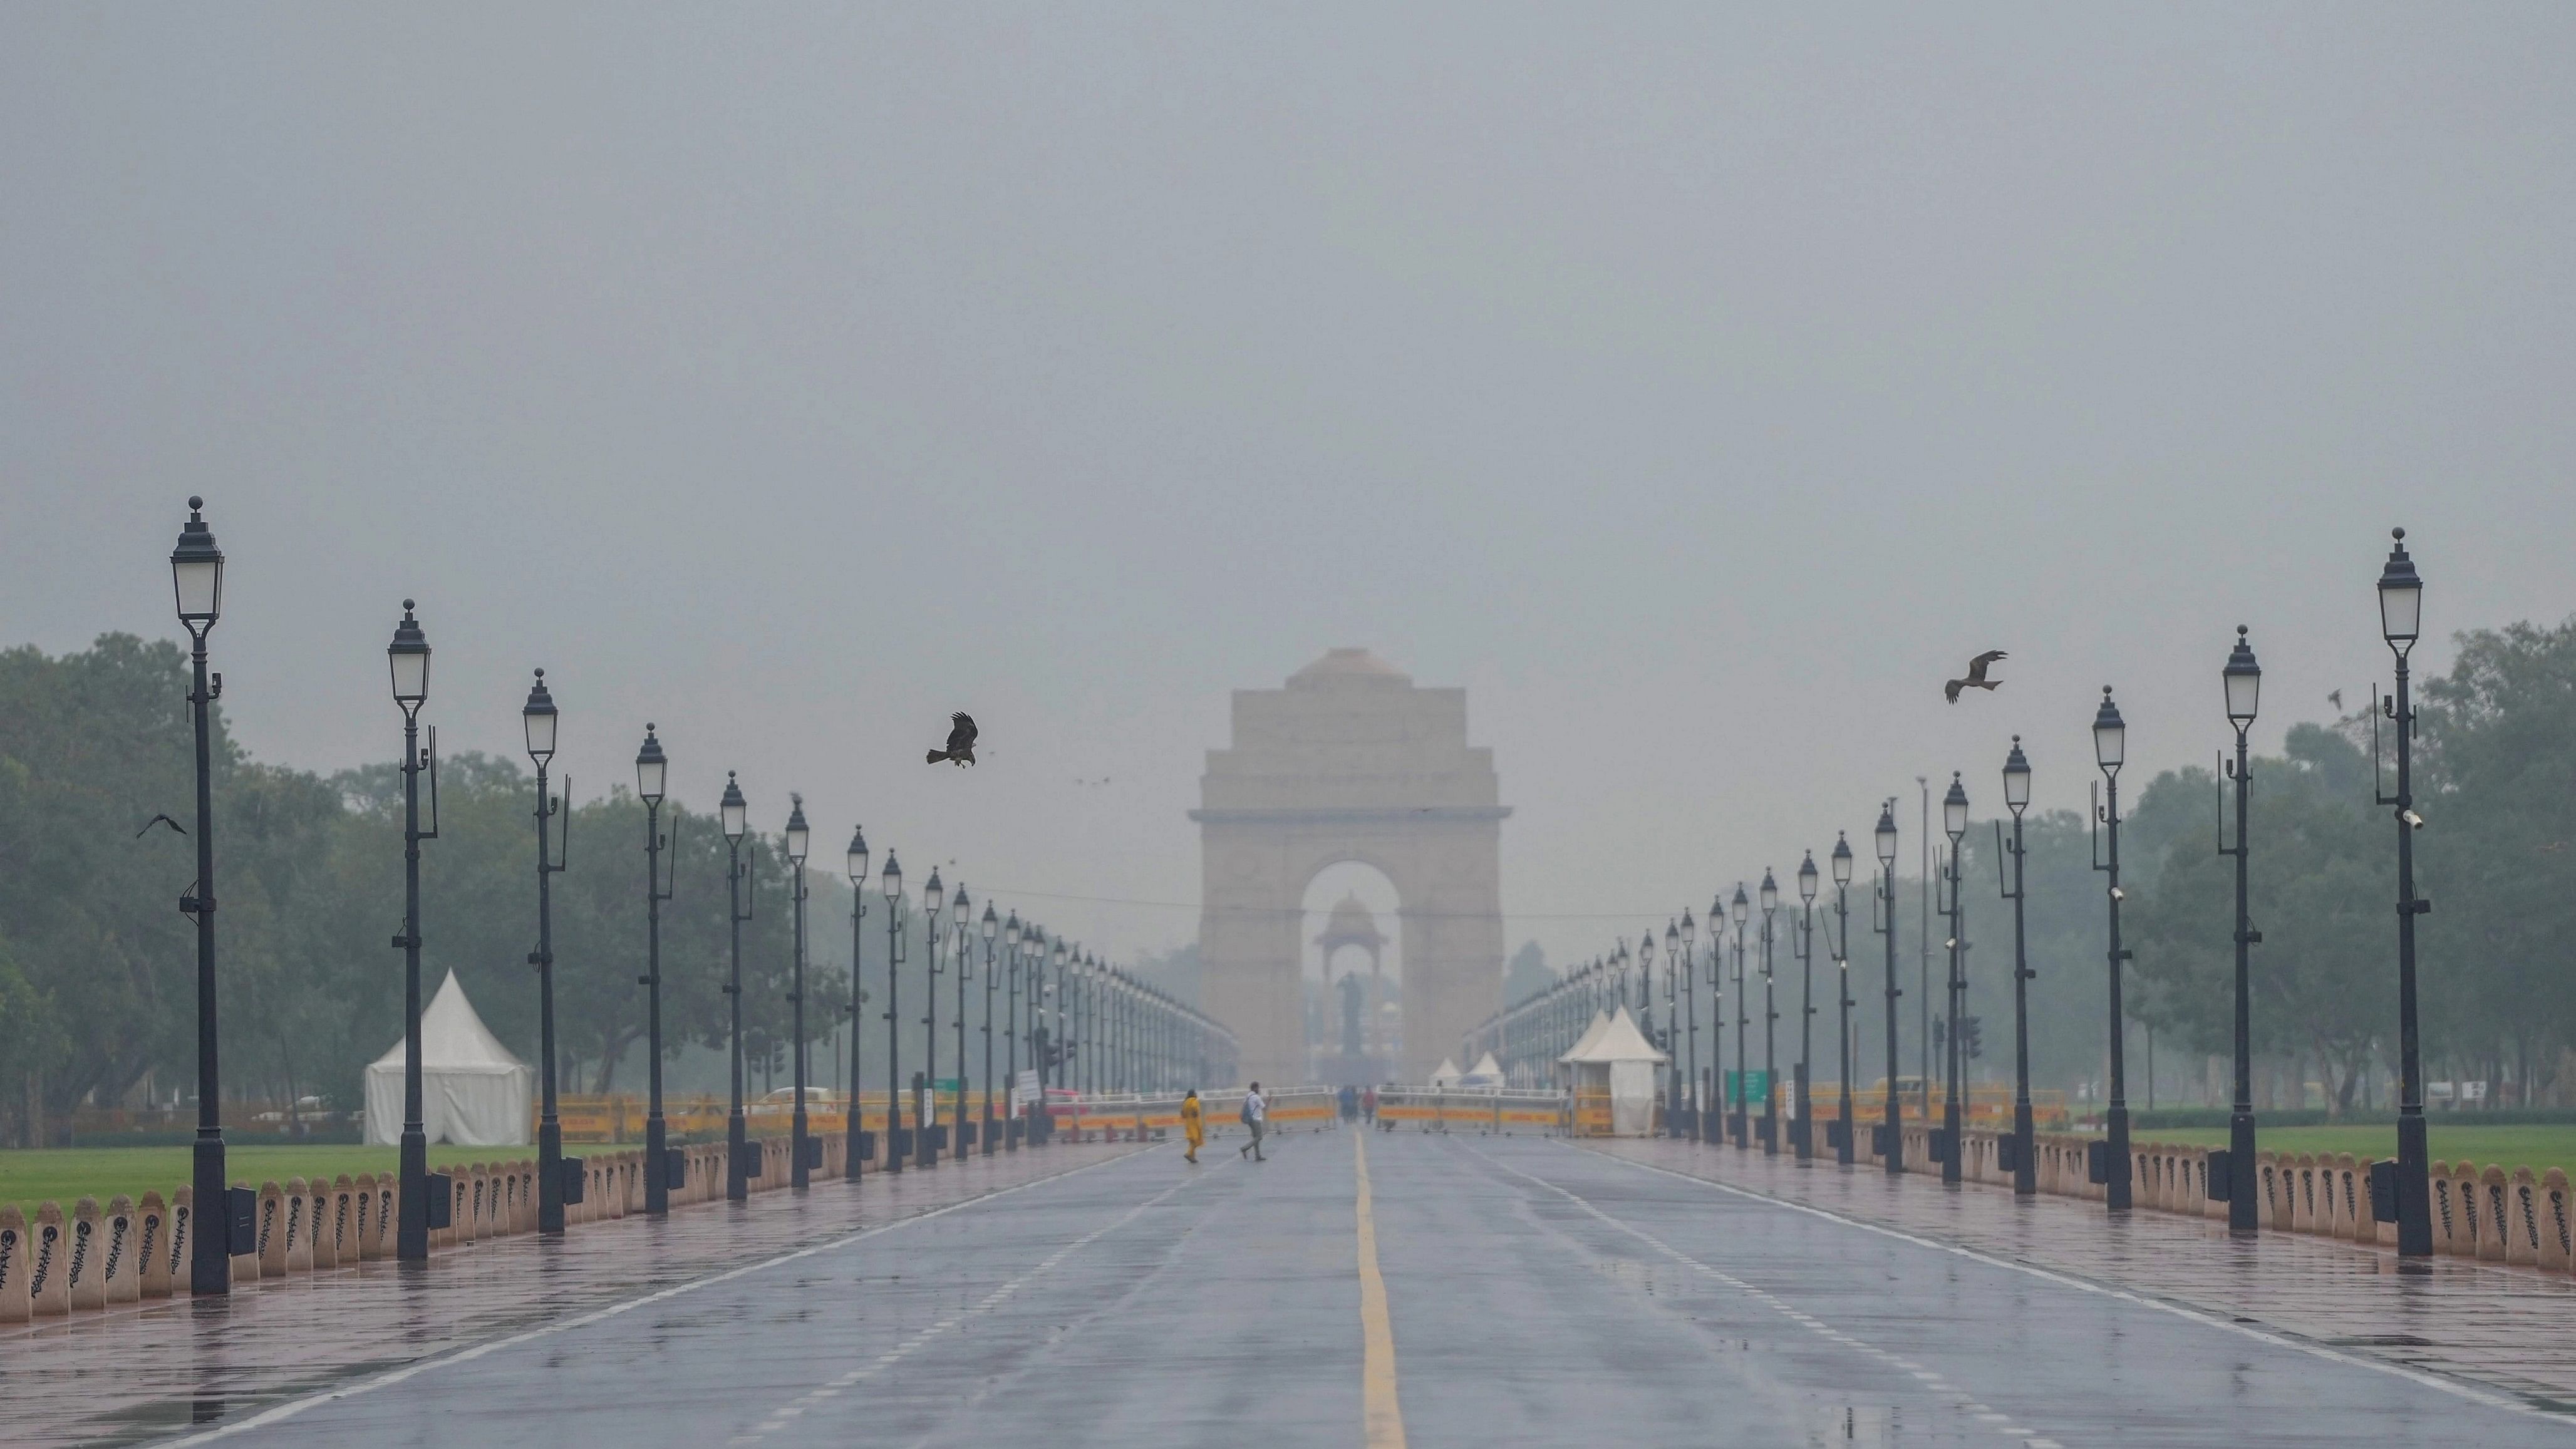 <div class="paragraphs"><p>Representative image of India Gate.</p></div>